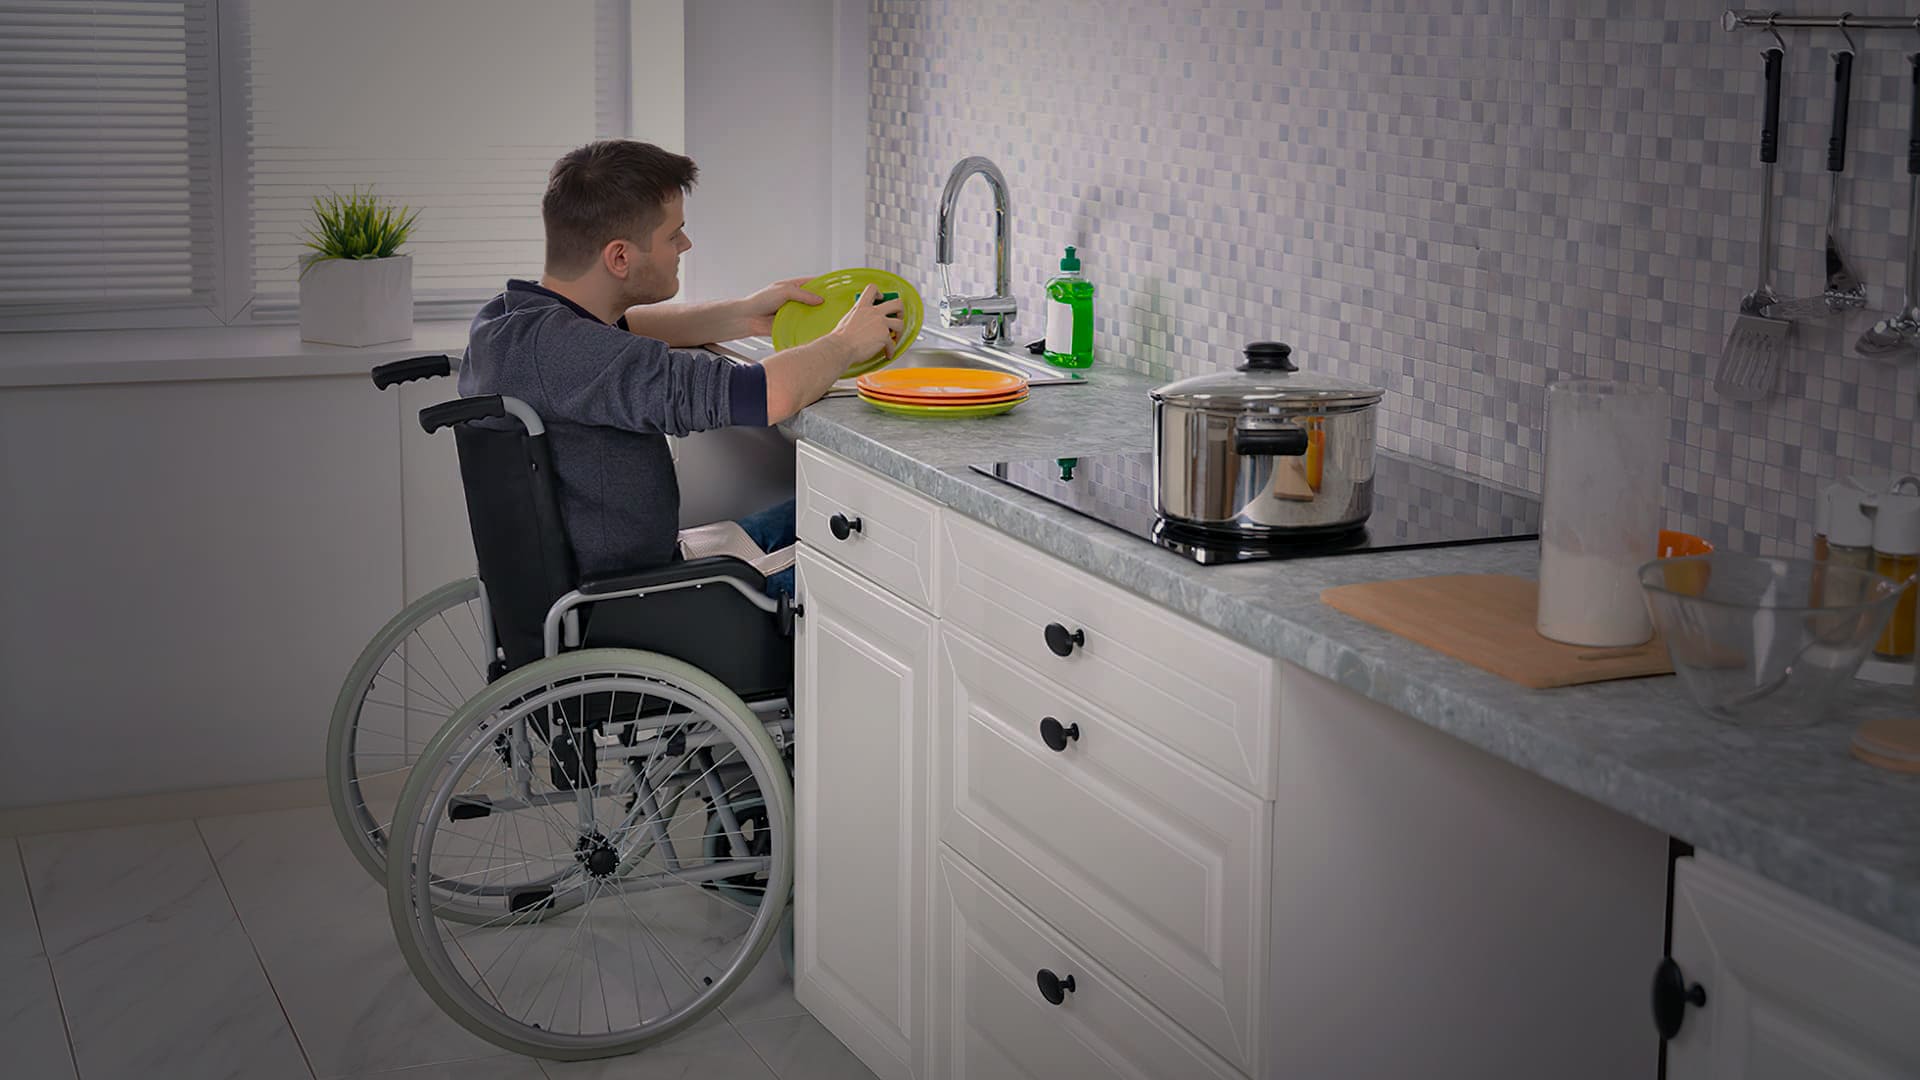 Homem em cadeira de rodas lavando a louça. Descrição na legenda do artigo sobre a importância da acessibilidade em projetos arquitetônicos.